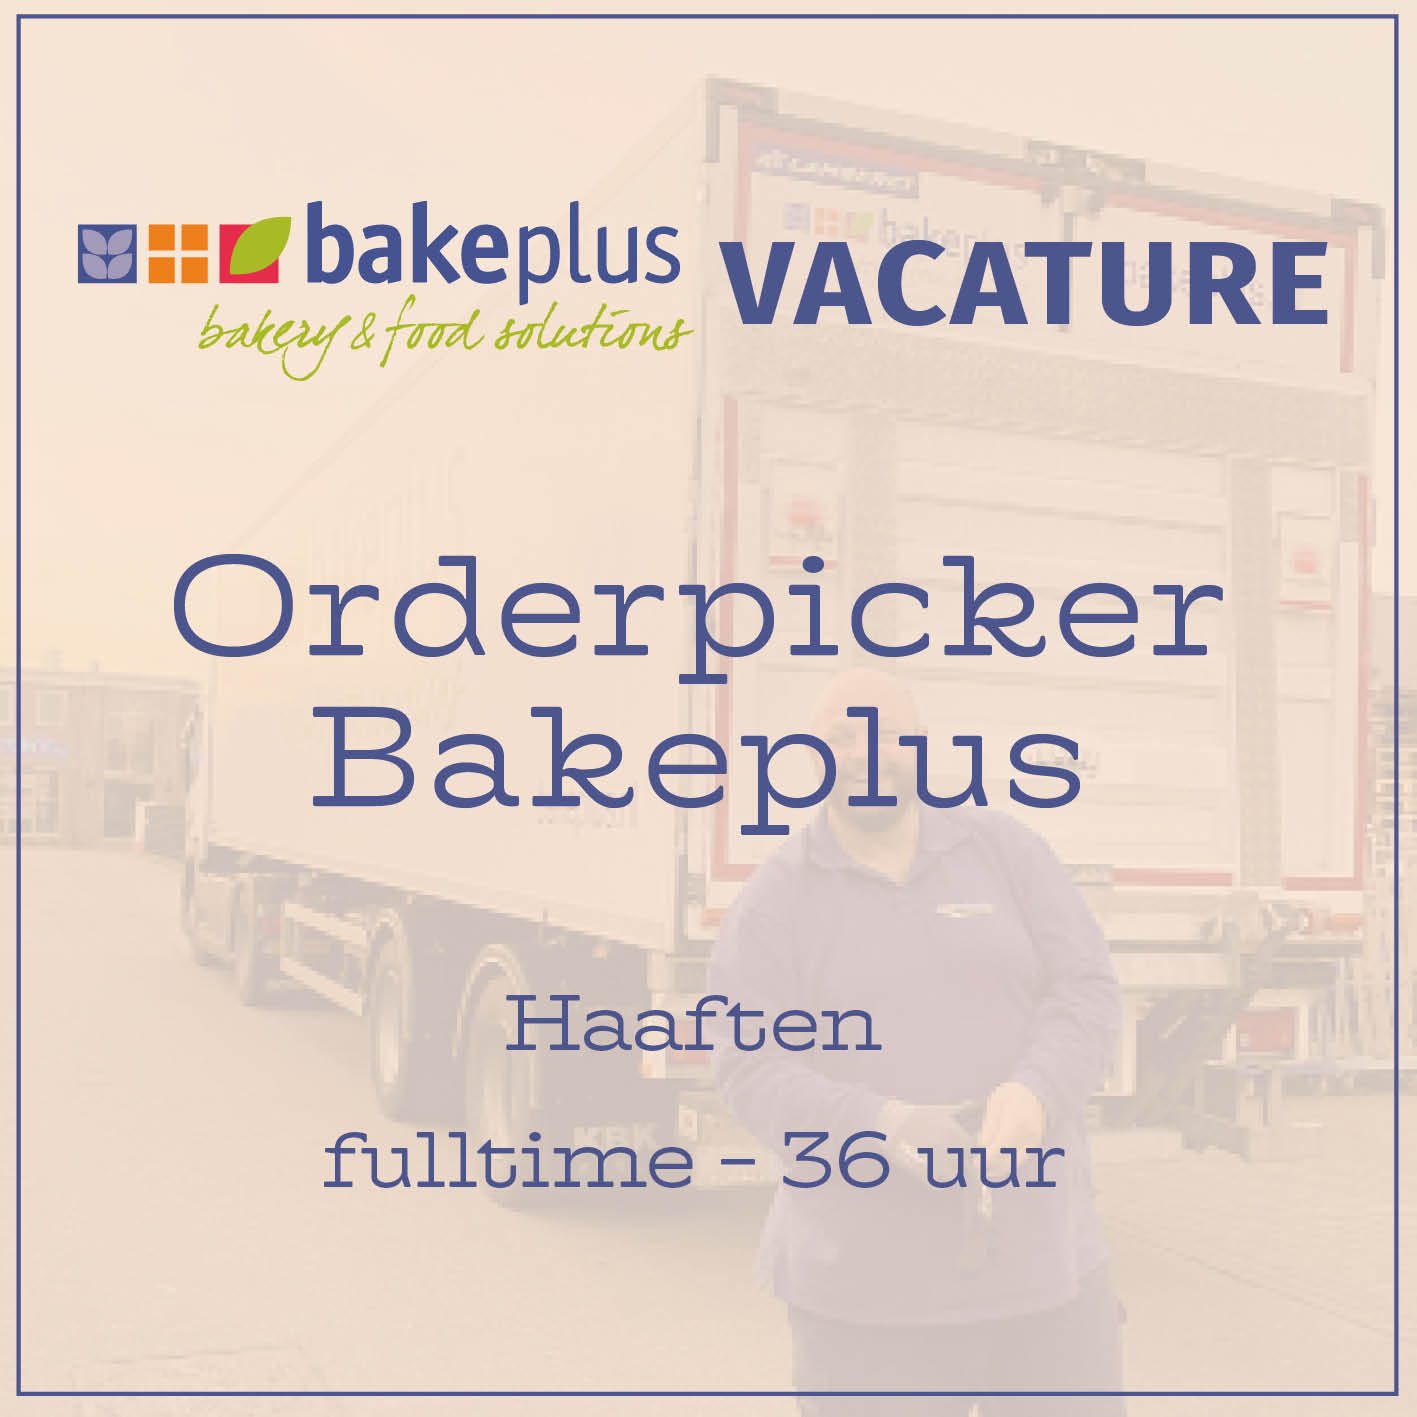 Bakeplus_vacature_Orderpicker_haaften.jpg